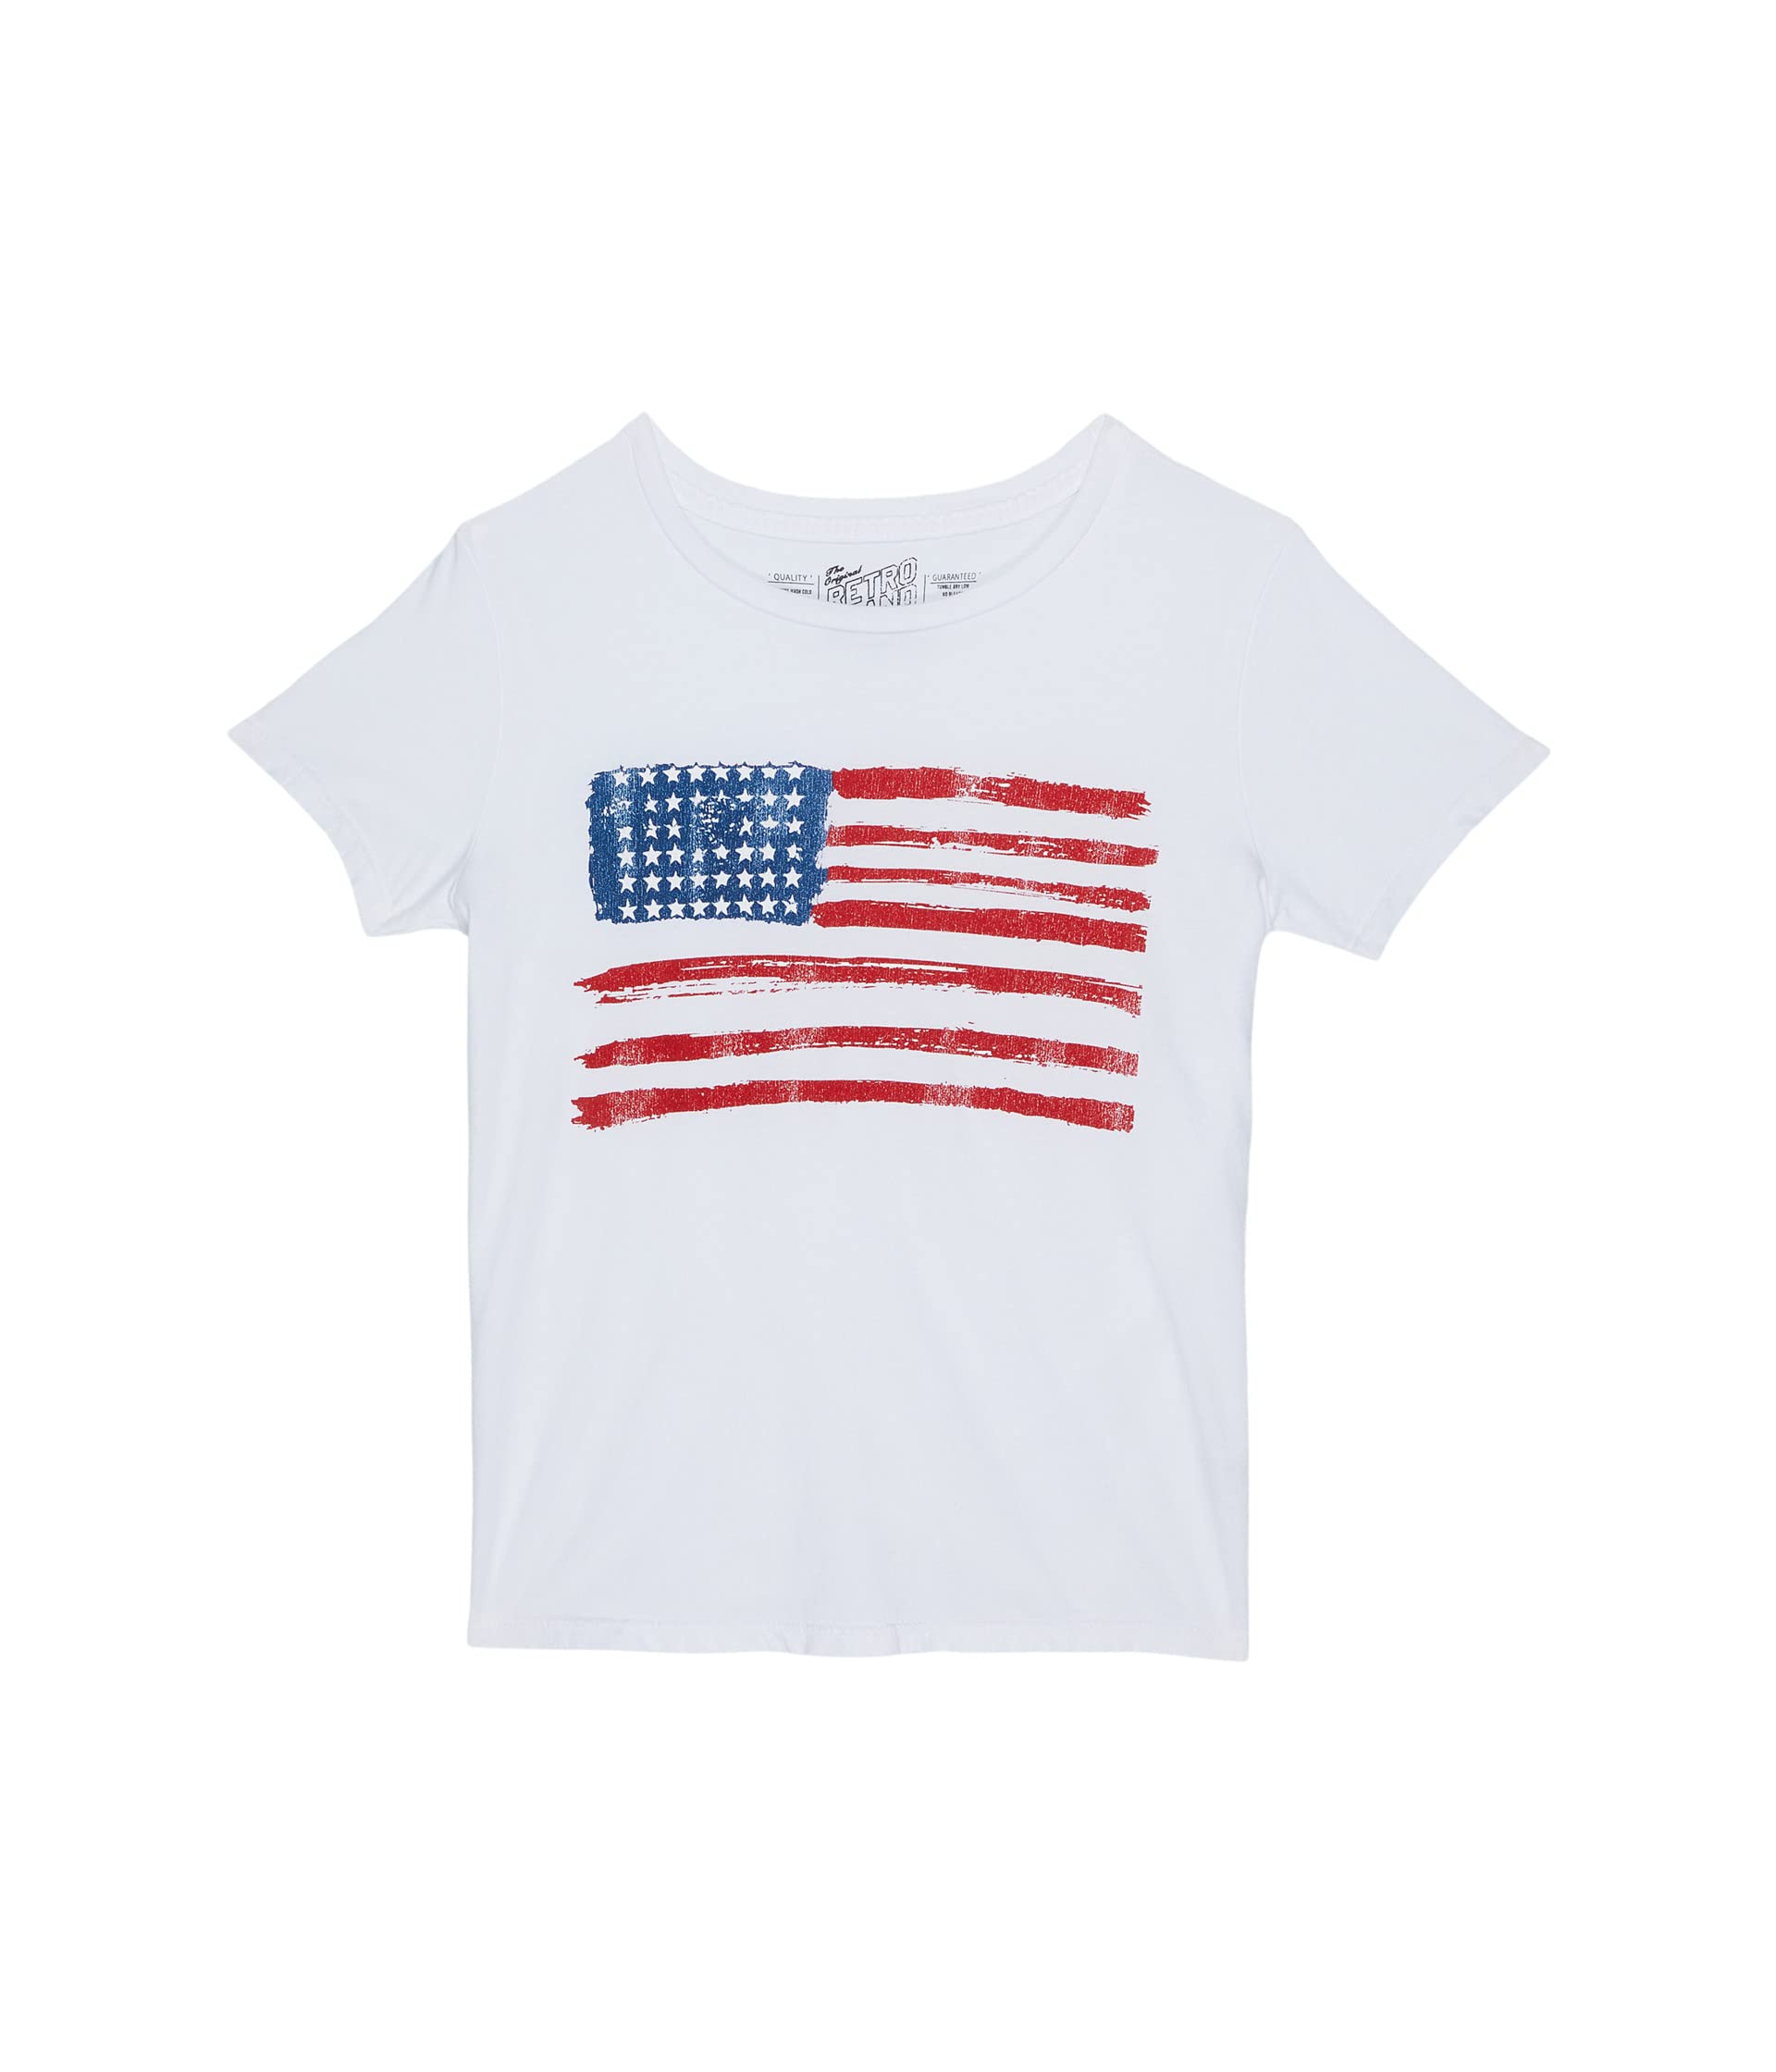 Хлопковая футболка с круглым вырезом и флагом США (для больших детей) The Original Retro Brand Kids